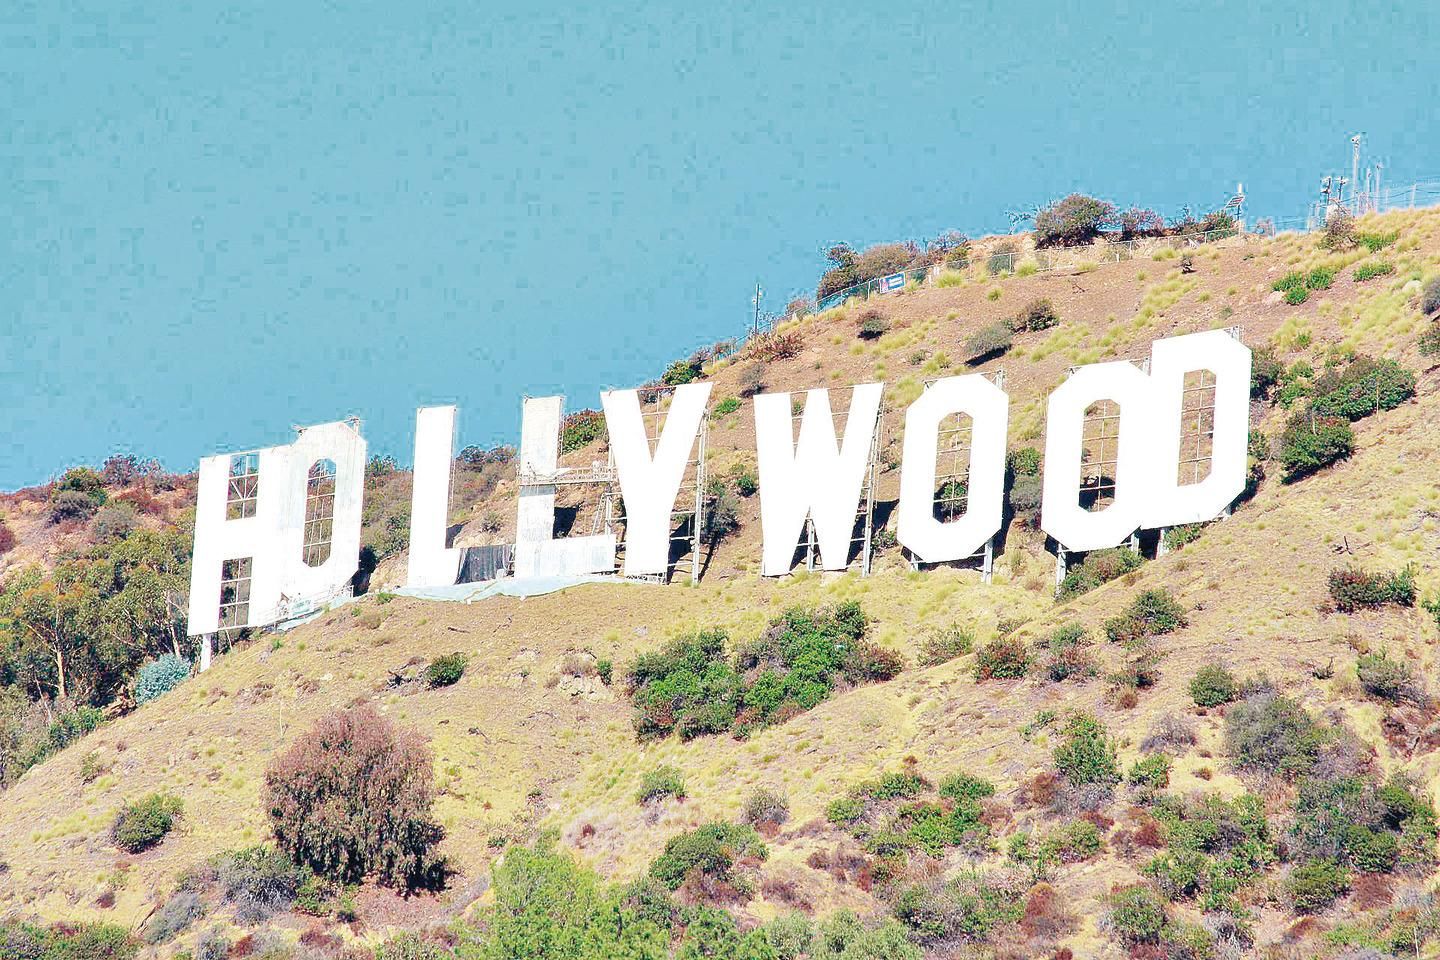 Projeto transforma letreiro de Hollywood em hotel – Mercado